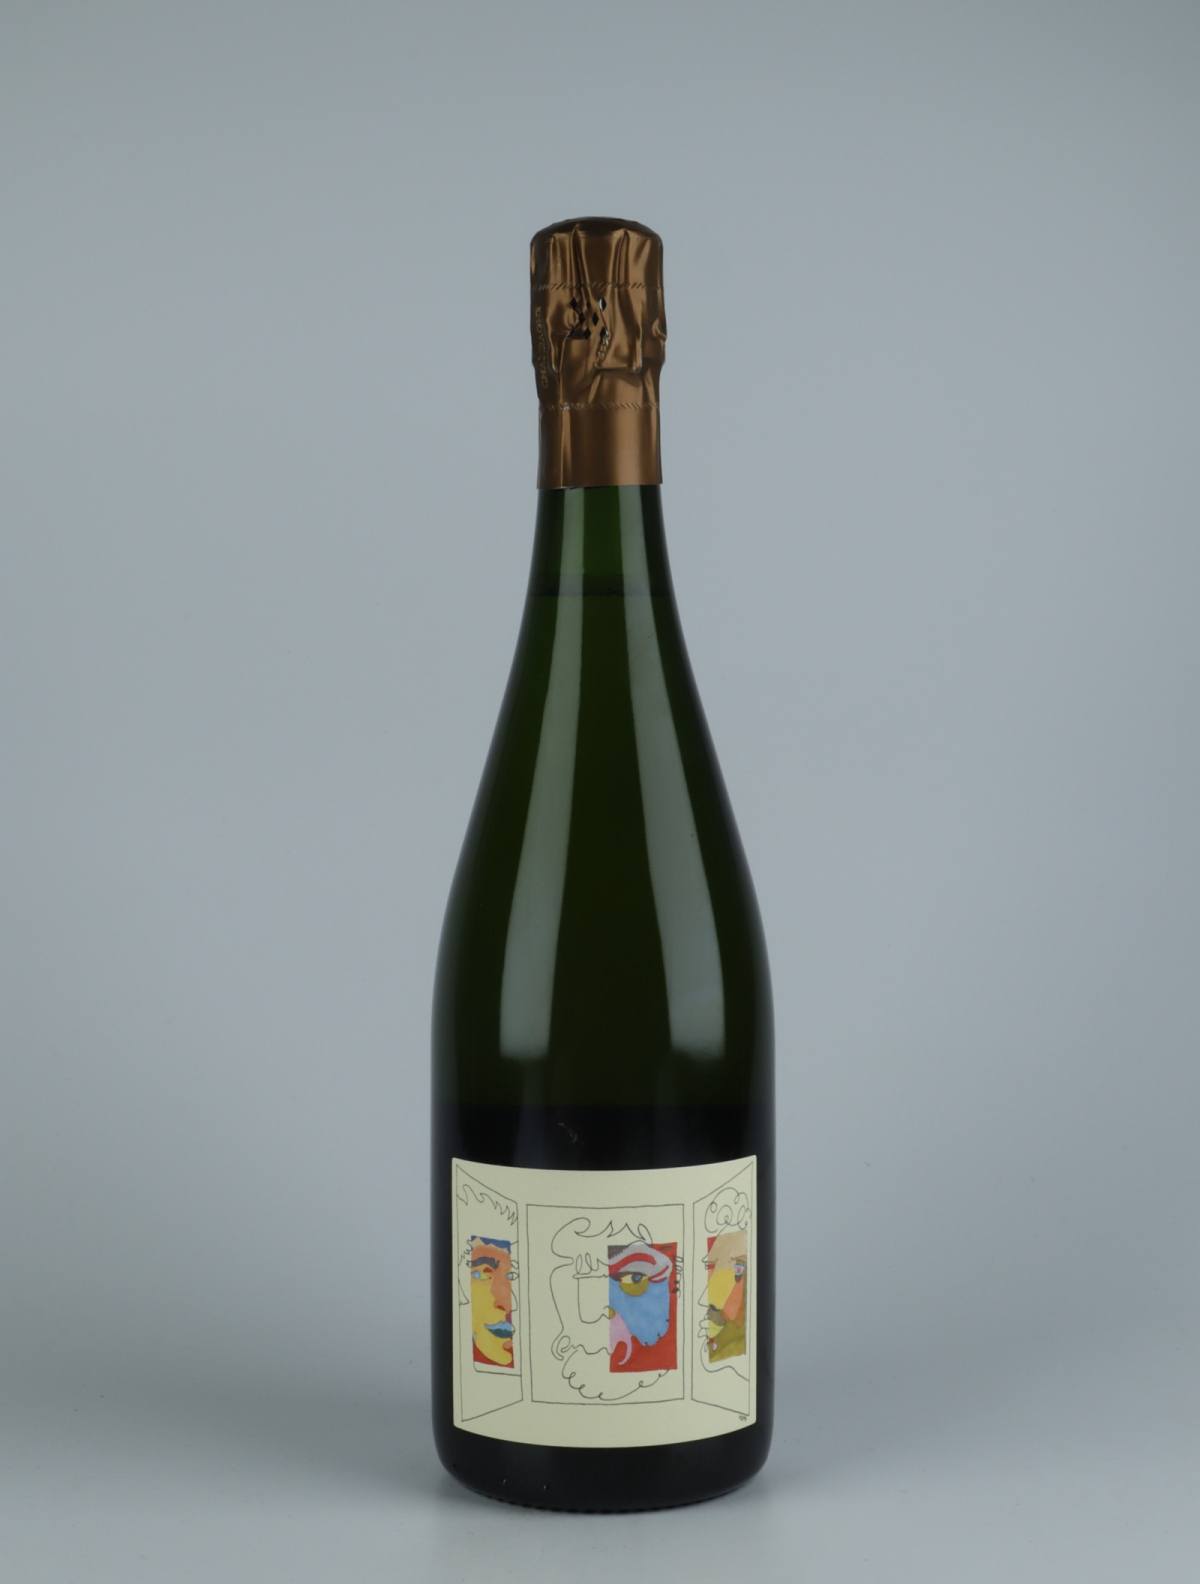 En flaske N.V. Triptyque - Brut Nature Mousserende fra Stroebel, Champagne i Frankrig